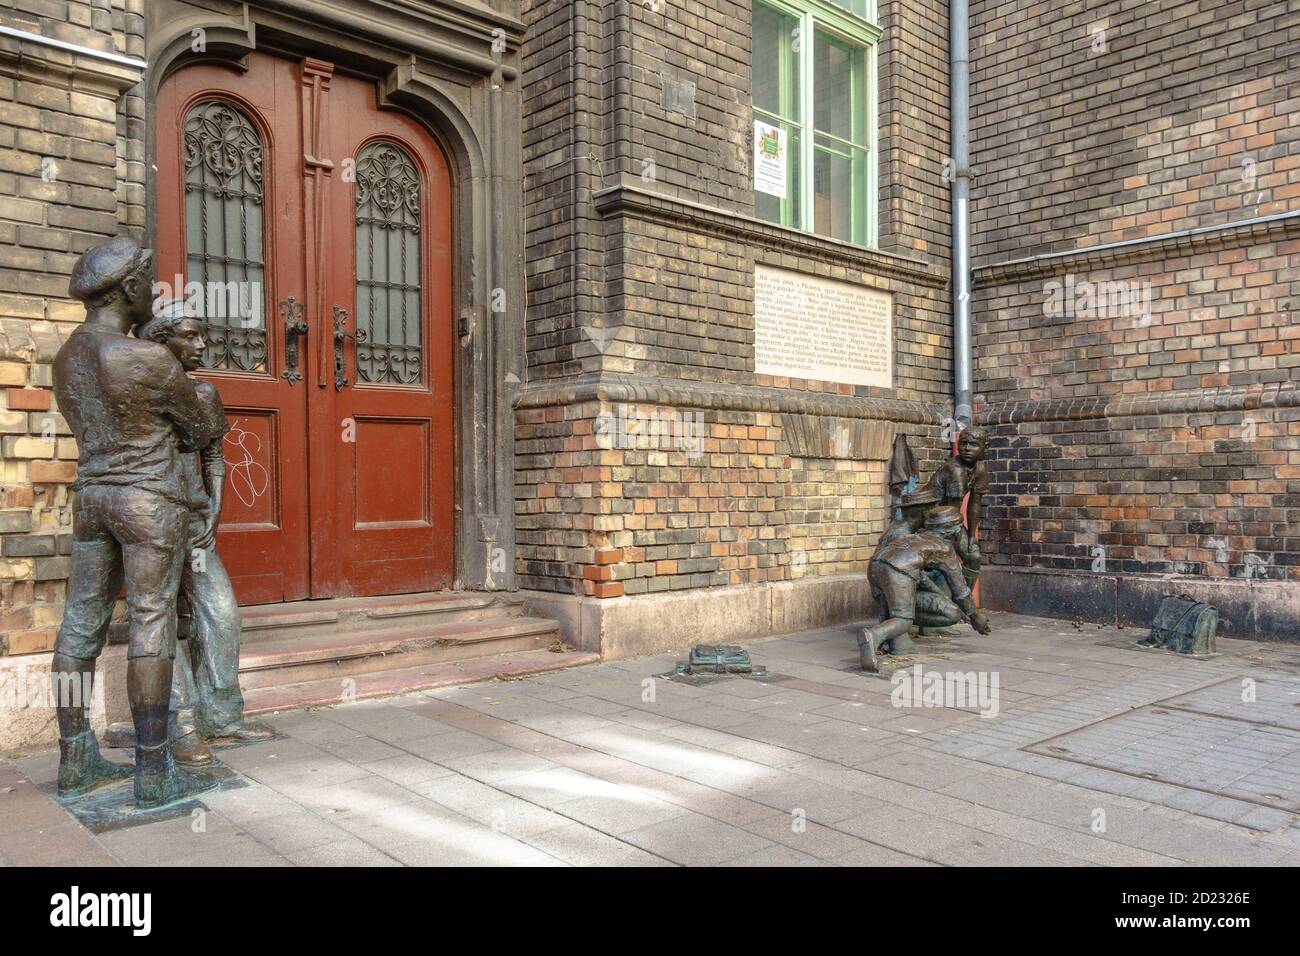 Eine Gruppe von Statuen, die die Paul Street Boys darstellen (PAL utcai fiuk) Aus dem Roman von Ference Molnar in Budapest Stockfoto